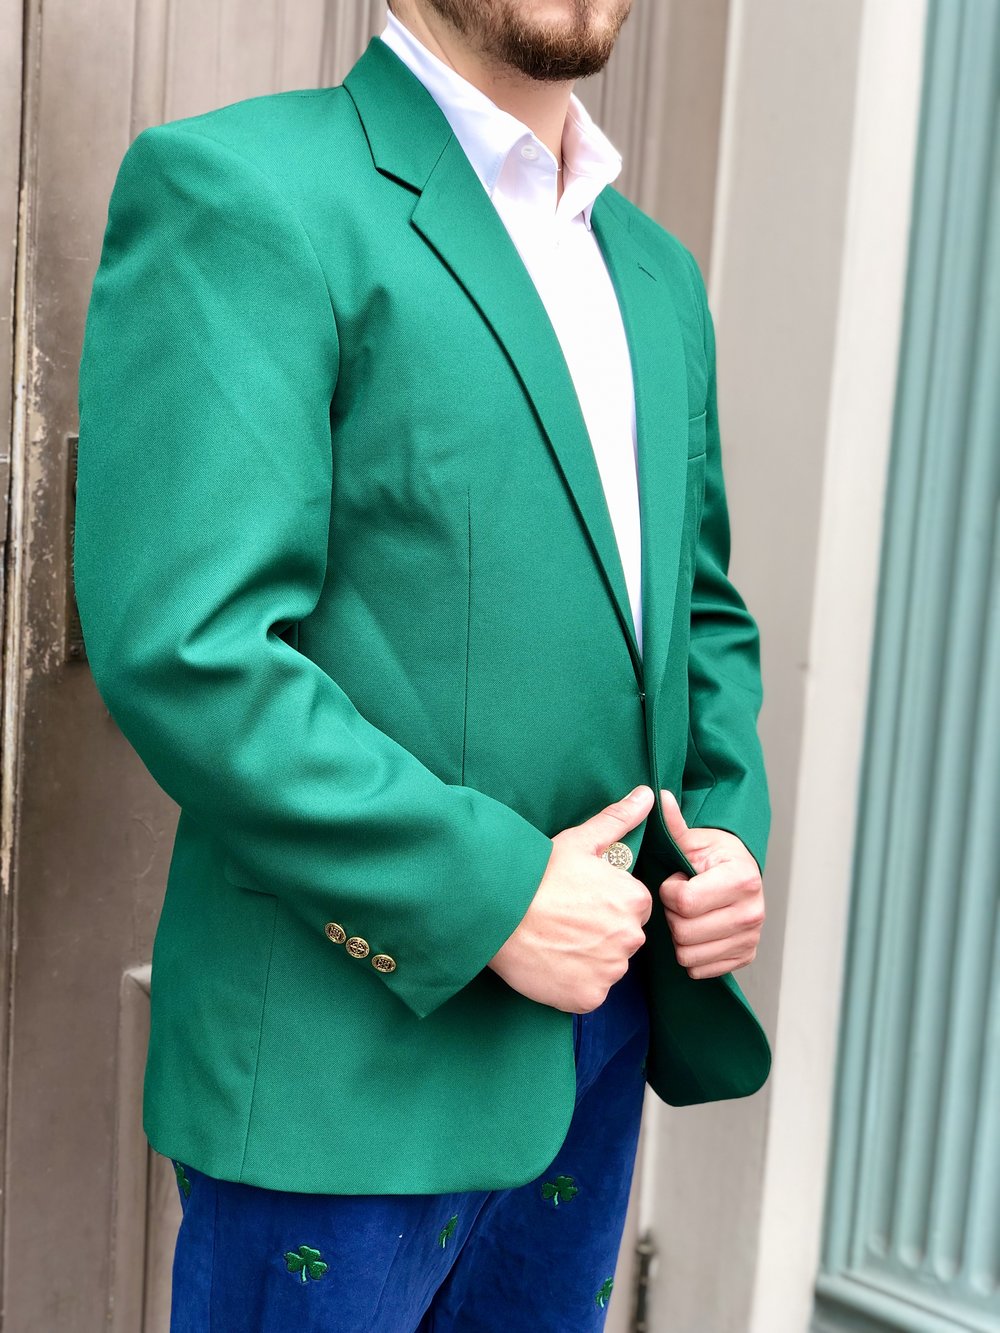 Vintage lightweight blazer in kelly green